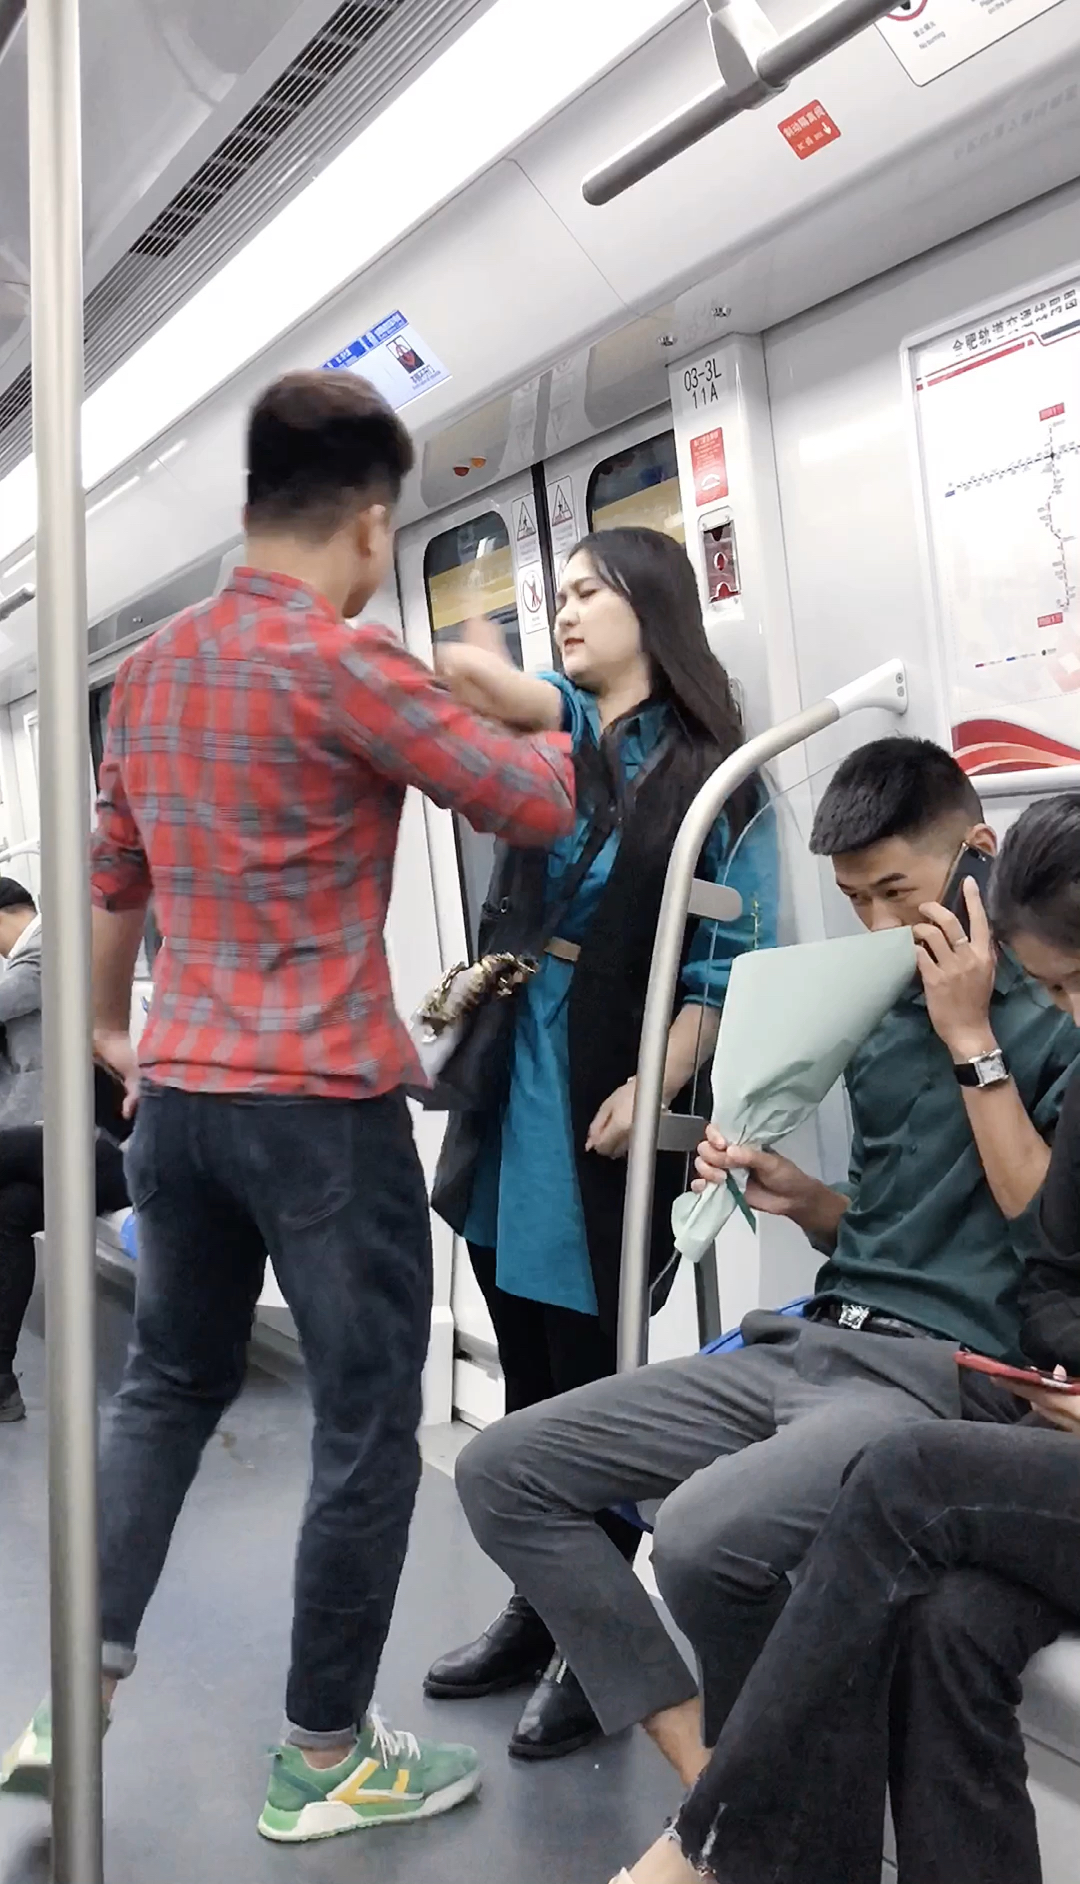 地铁上偶遇情侣吵架